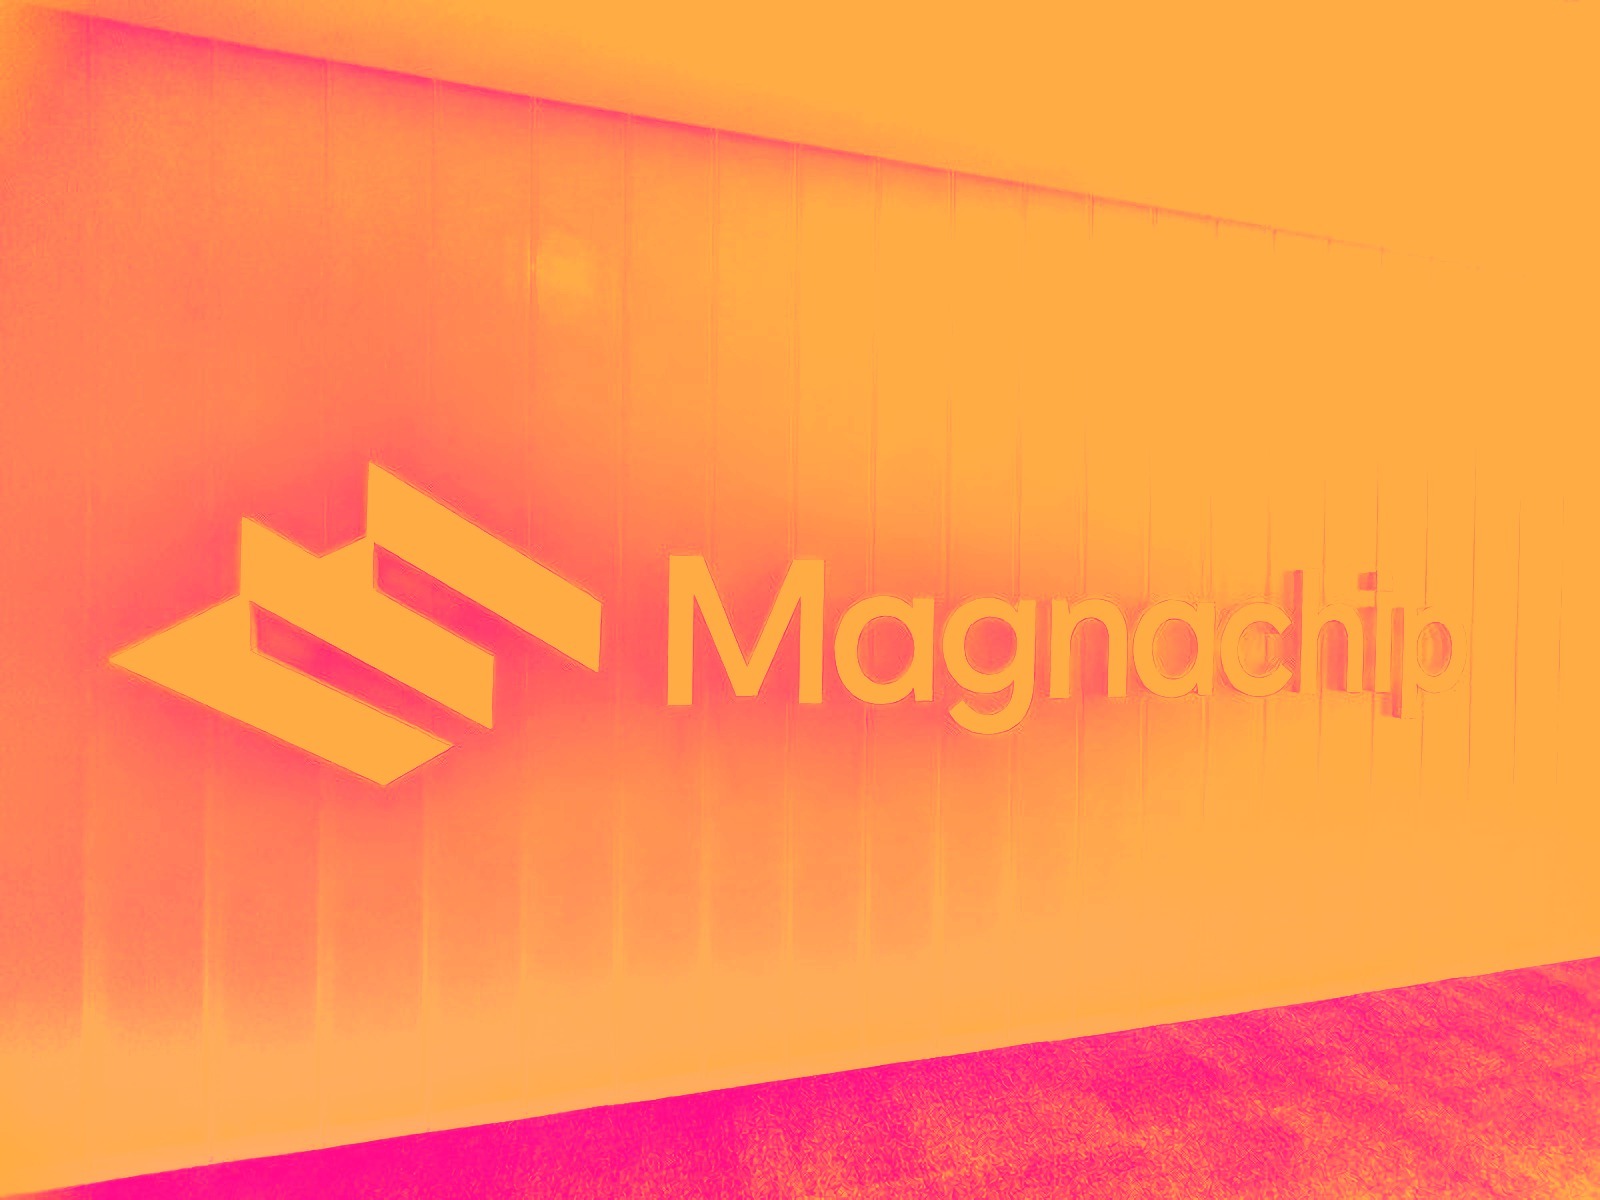 Magnachip semiconductor corporation cover ima d9a66de1cbfb